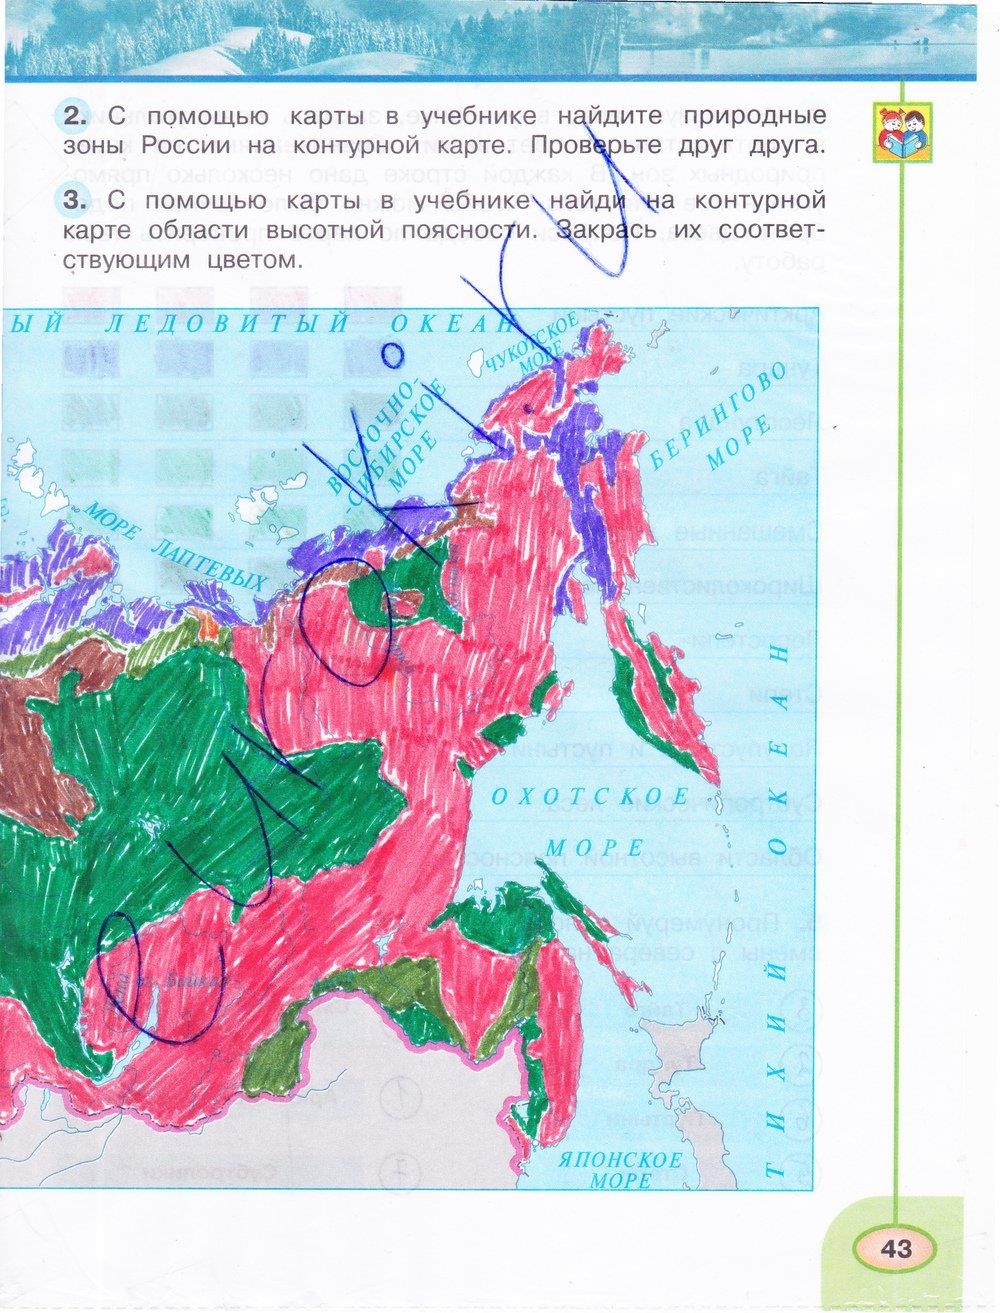 Карта природных зон 4 класса учебник. Окружающий мир 4 класс рабочая тетрадь 1 часть контурная карта России. Природные зоны 4 класс окружающий мир рабочая тетрадь. Карта природных зон 4 класс окружающий мир рабочая тетрадь ответы. Окружающий мир 4 класс карта природных зон рабочая тетрадь.